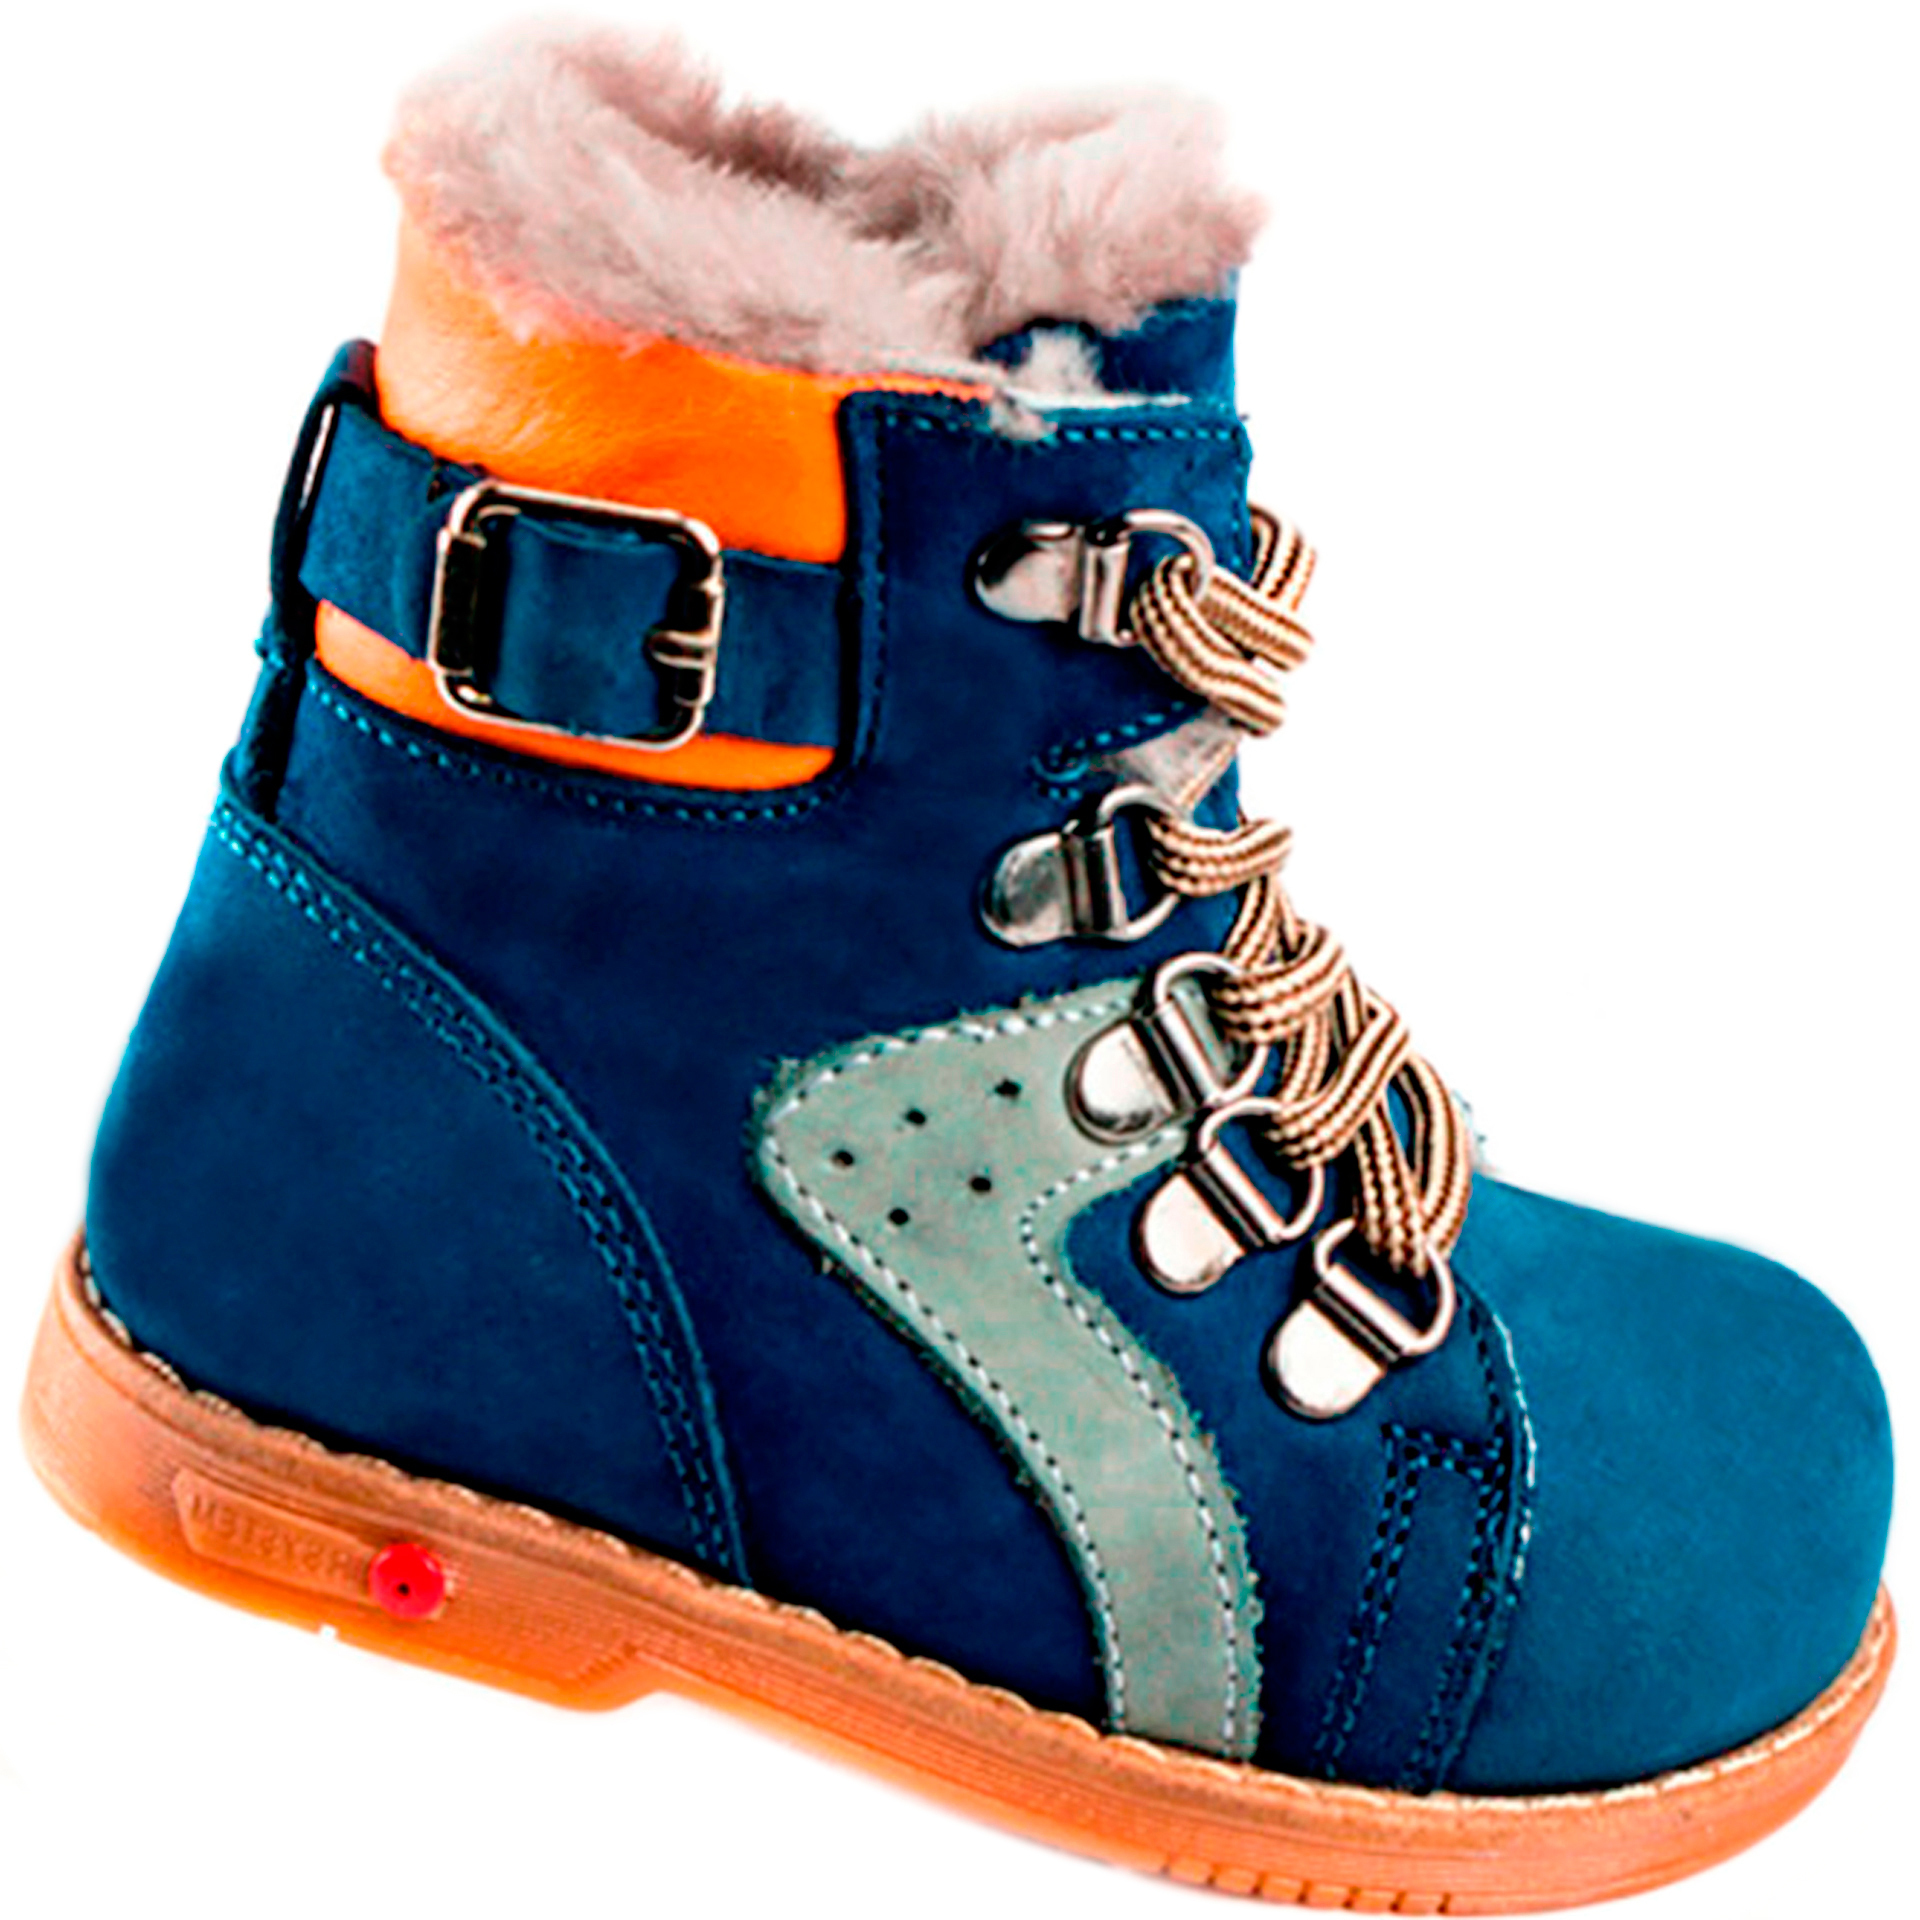 Зимние ботинки детские (1267) материал Нубук, цвет Синий  для мальчиков 26-30 размеры – Sole Kids. Фото 1